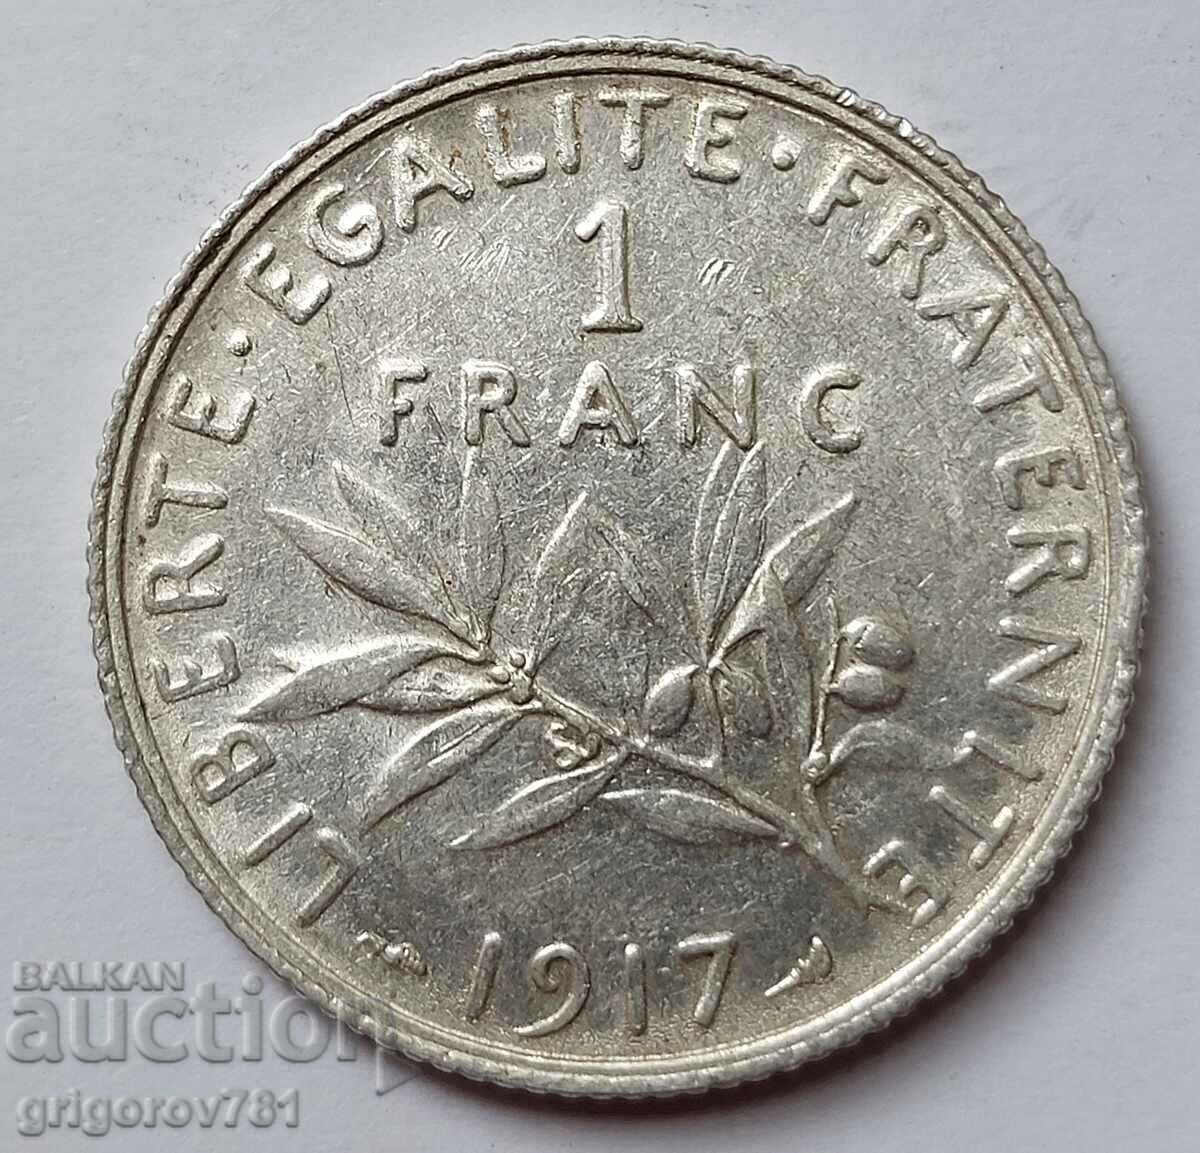 1 franc argint Franța 1917 - monedă de argint №15